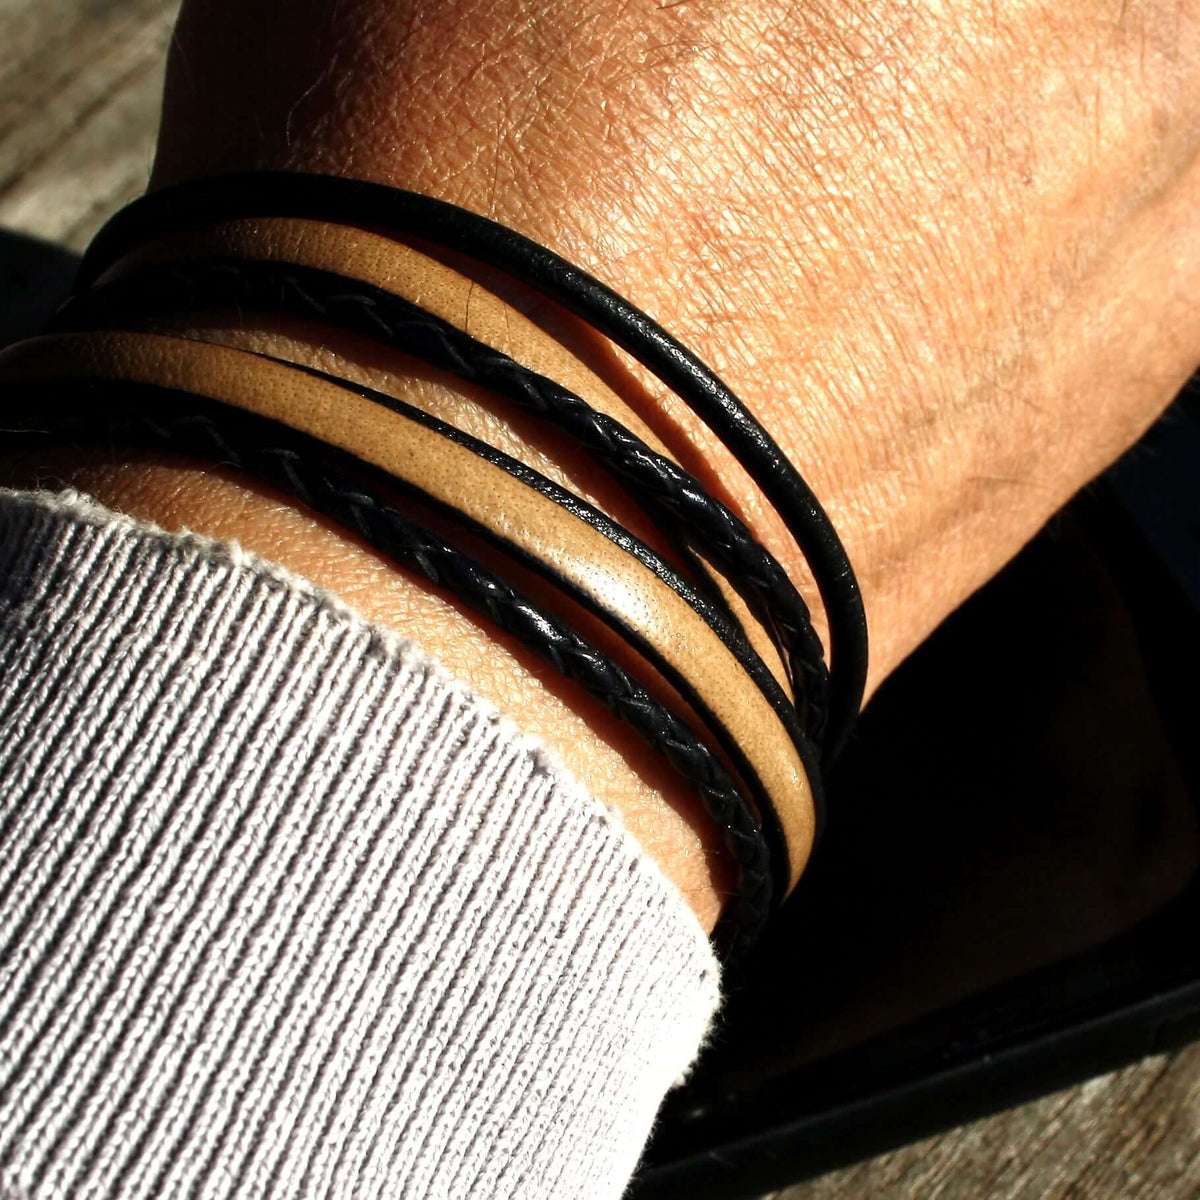 Herren-Leder-Armband-Mixed-schwarz-elfenbein-rund-Edelstahlverschluss-getragen-wavepirate-shop-lf-1